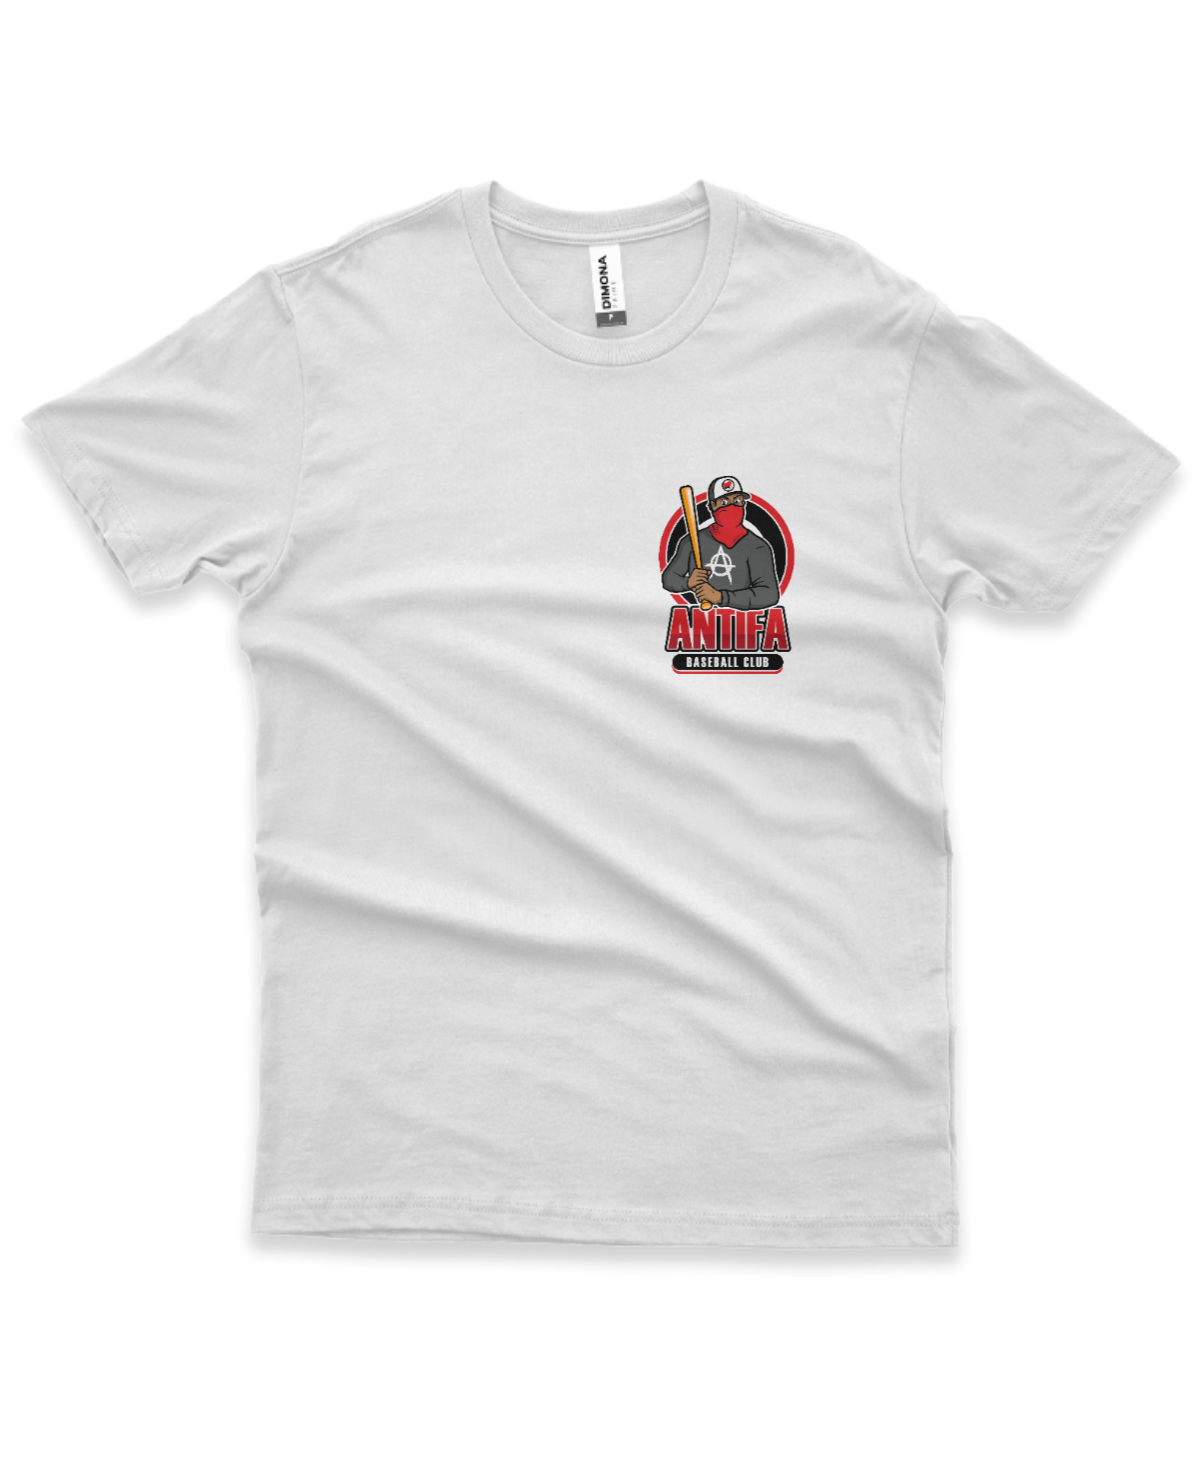 camiseta masculina cor branca com estampa brasão da ilustração de homem mascarado e frase antifa baseball club